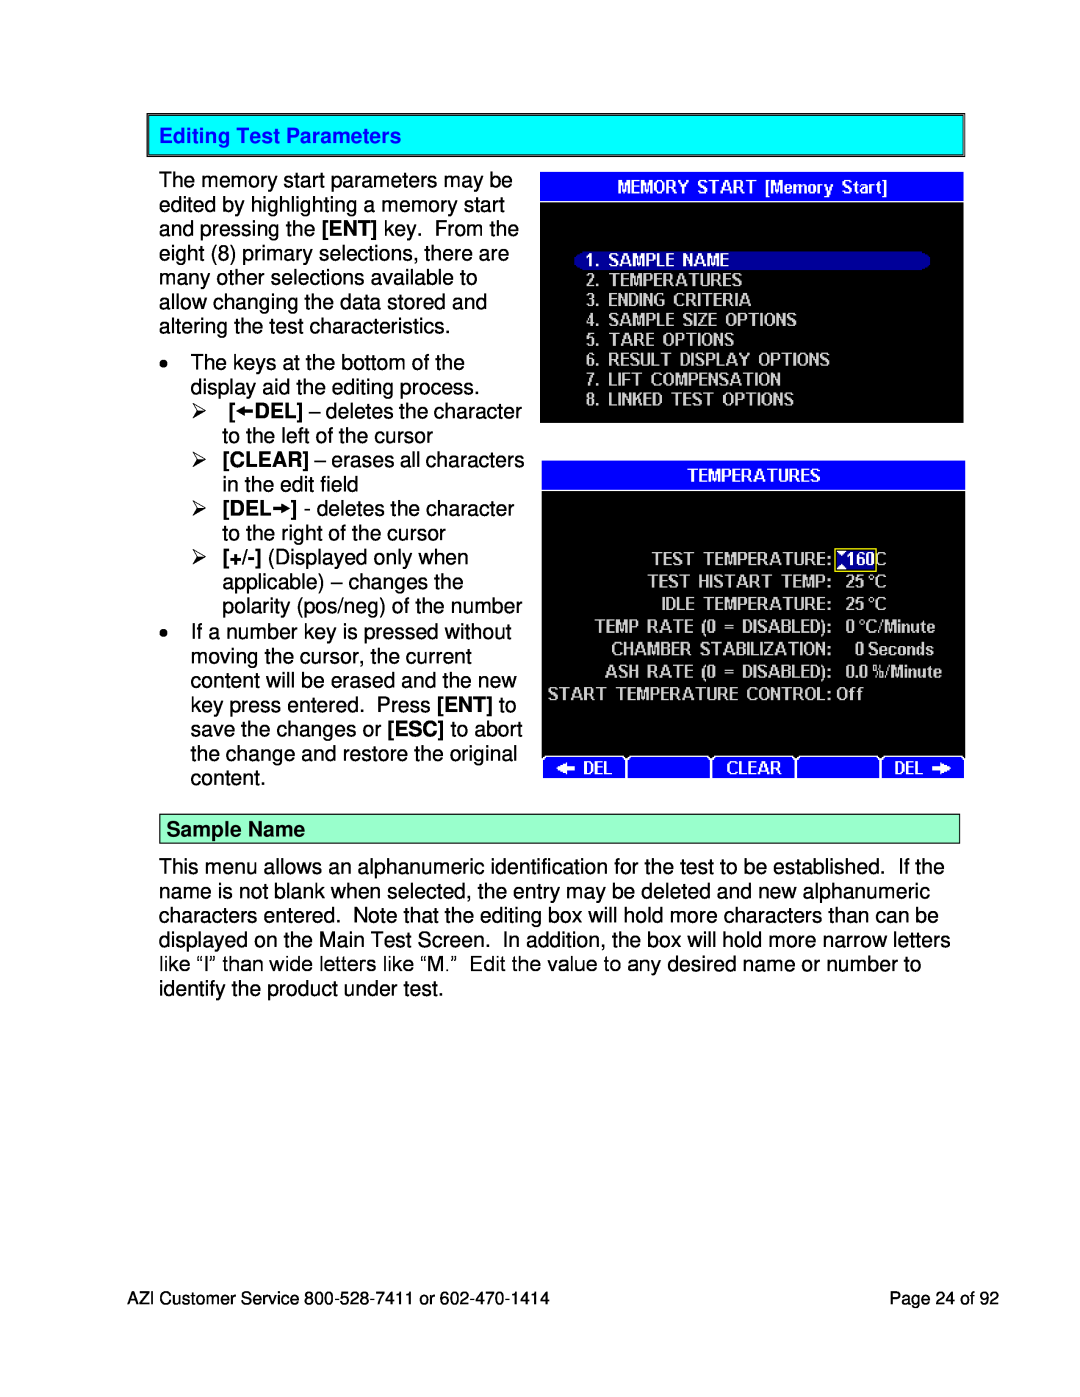 Arizona MAX-5000XL user manual Editing Test Parameters, Sample Name 